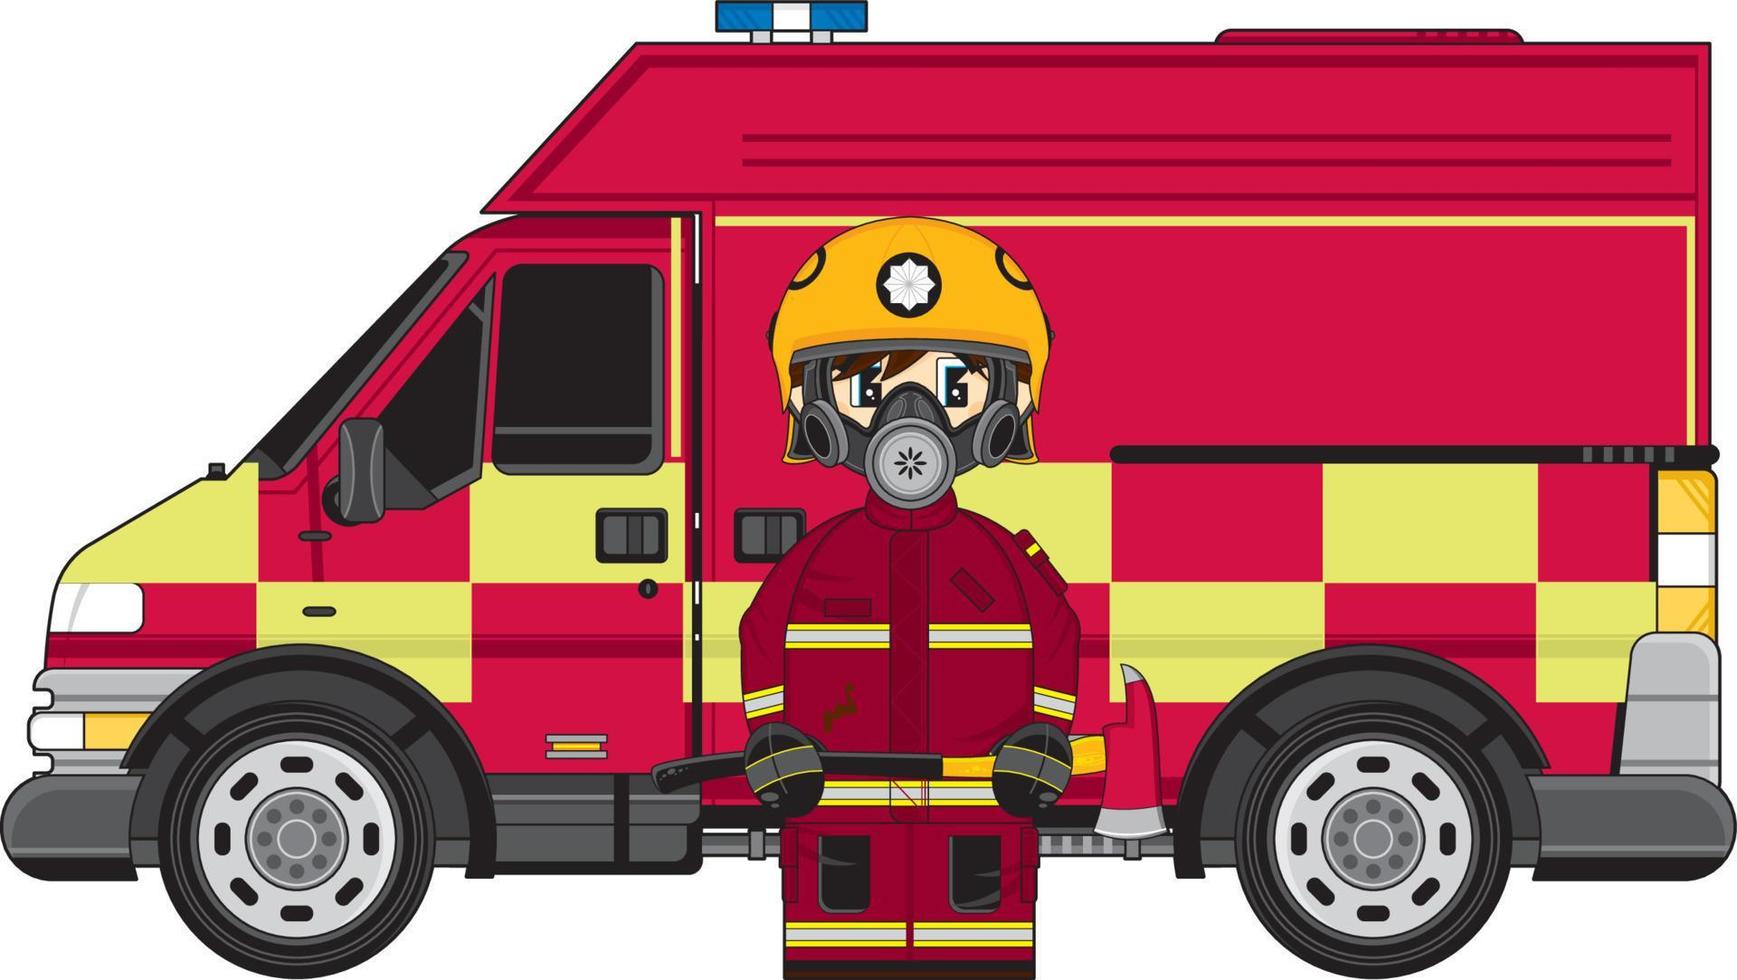 Cute UK Cartoon Fireman and Fire Engine vector